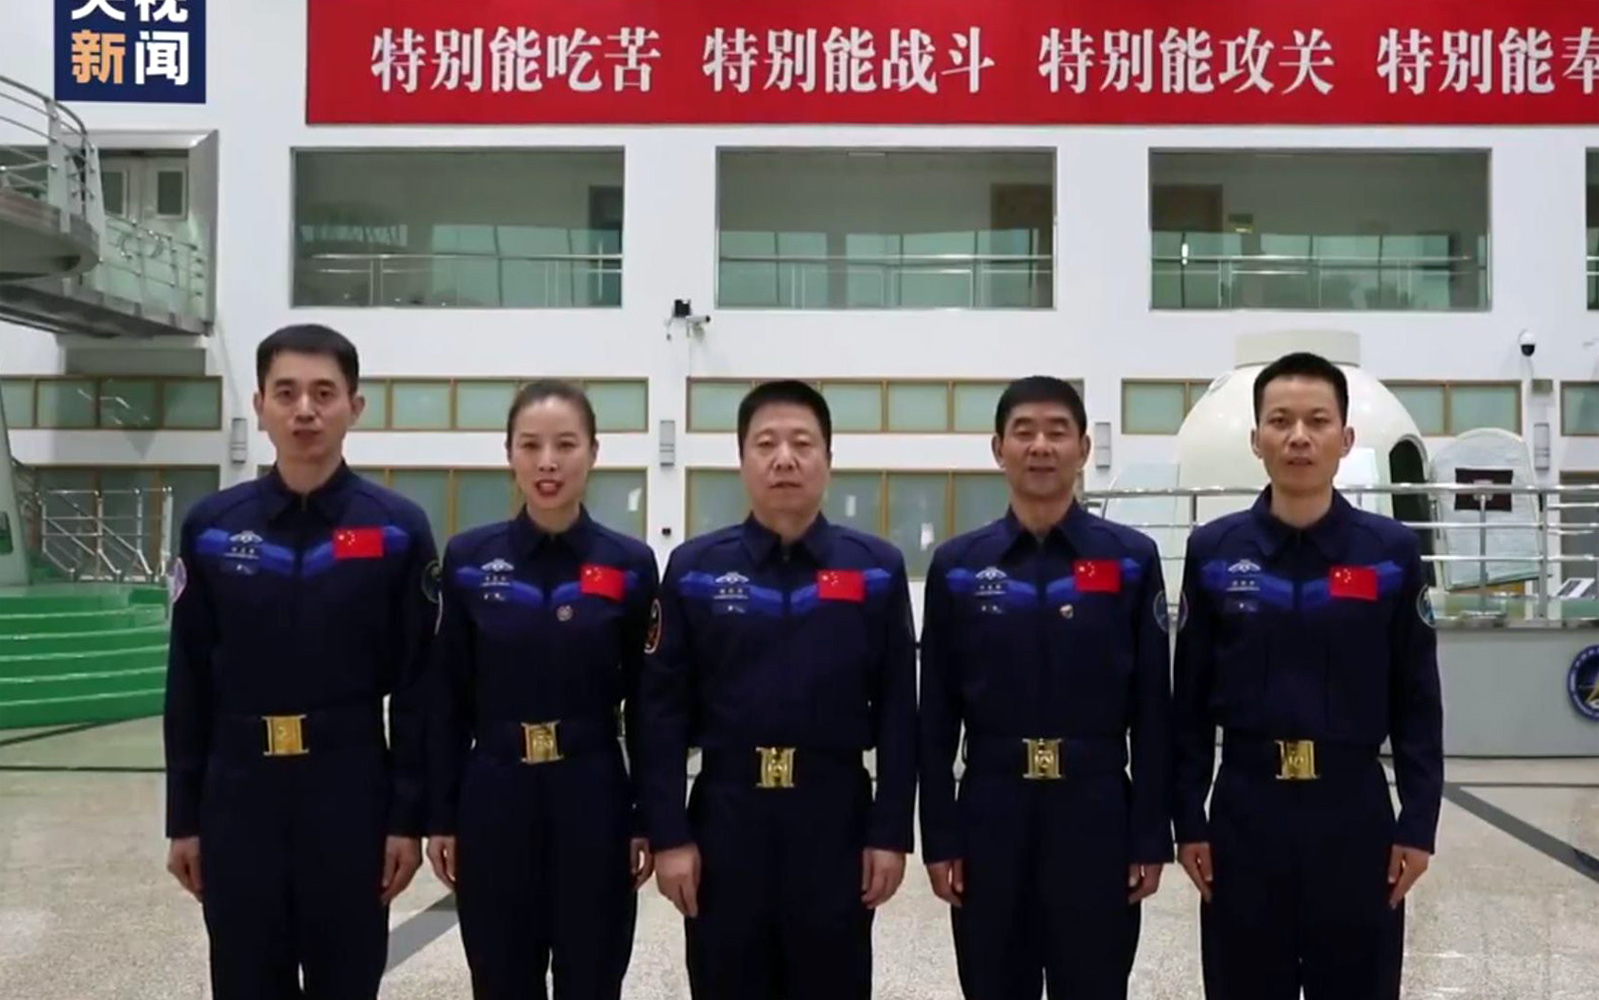 中国启动第四批预备航天员选拔